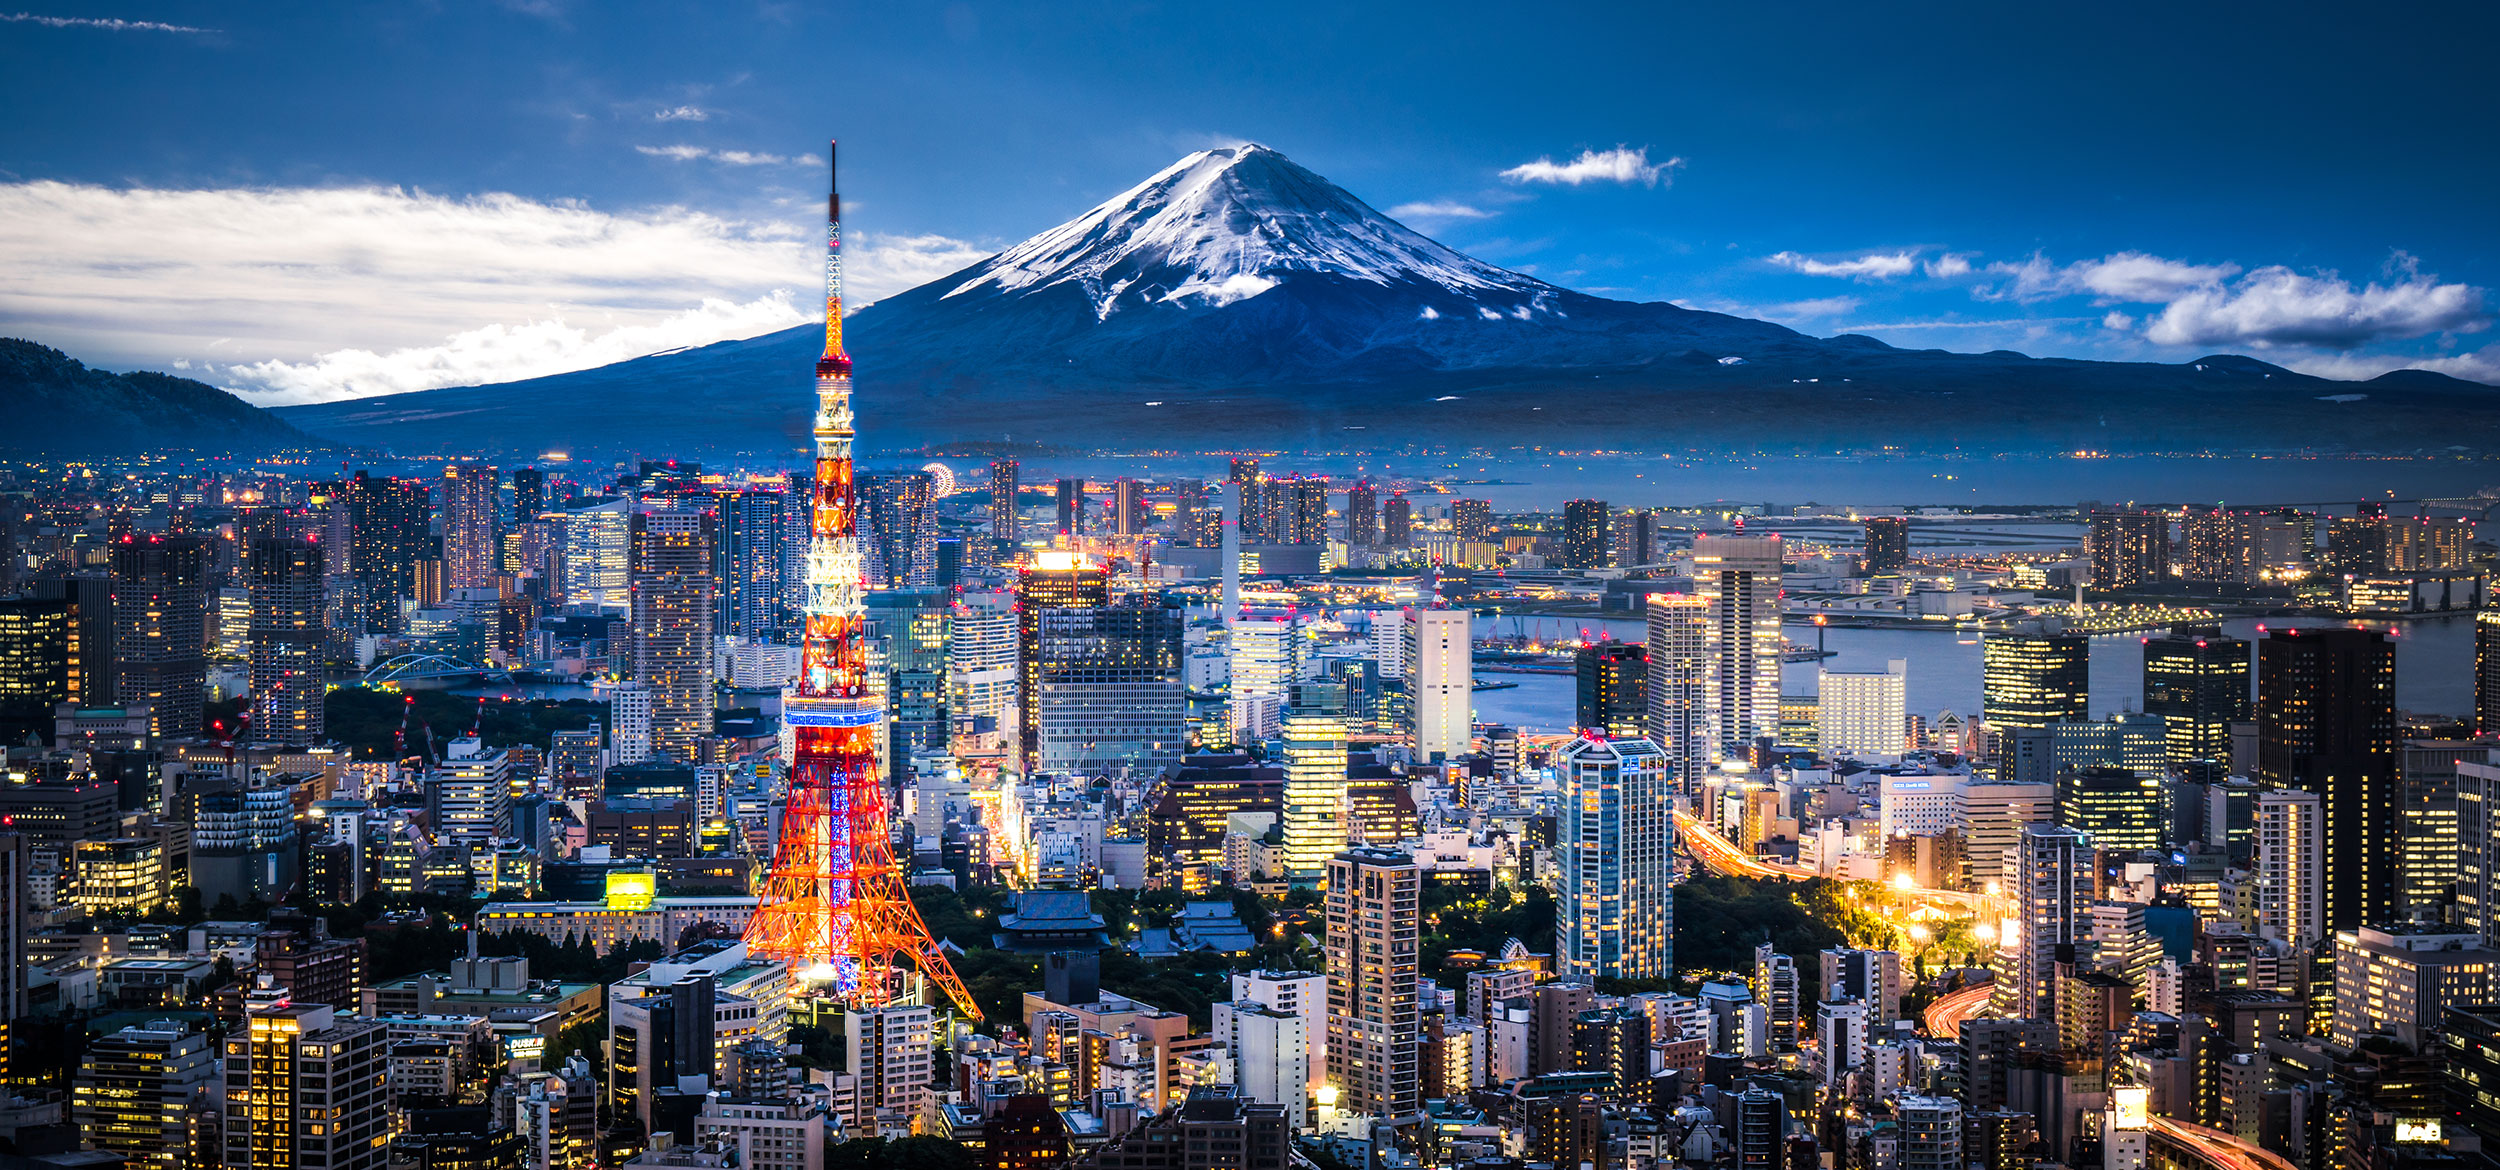 日本富士山是一座活火山，距离首都东京有多远？